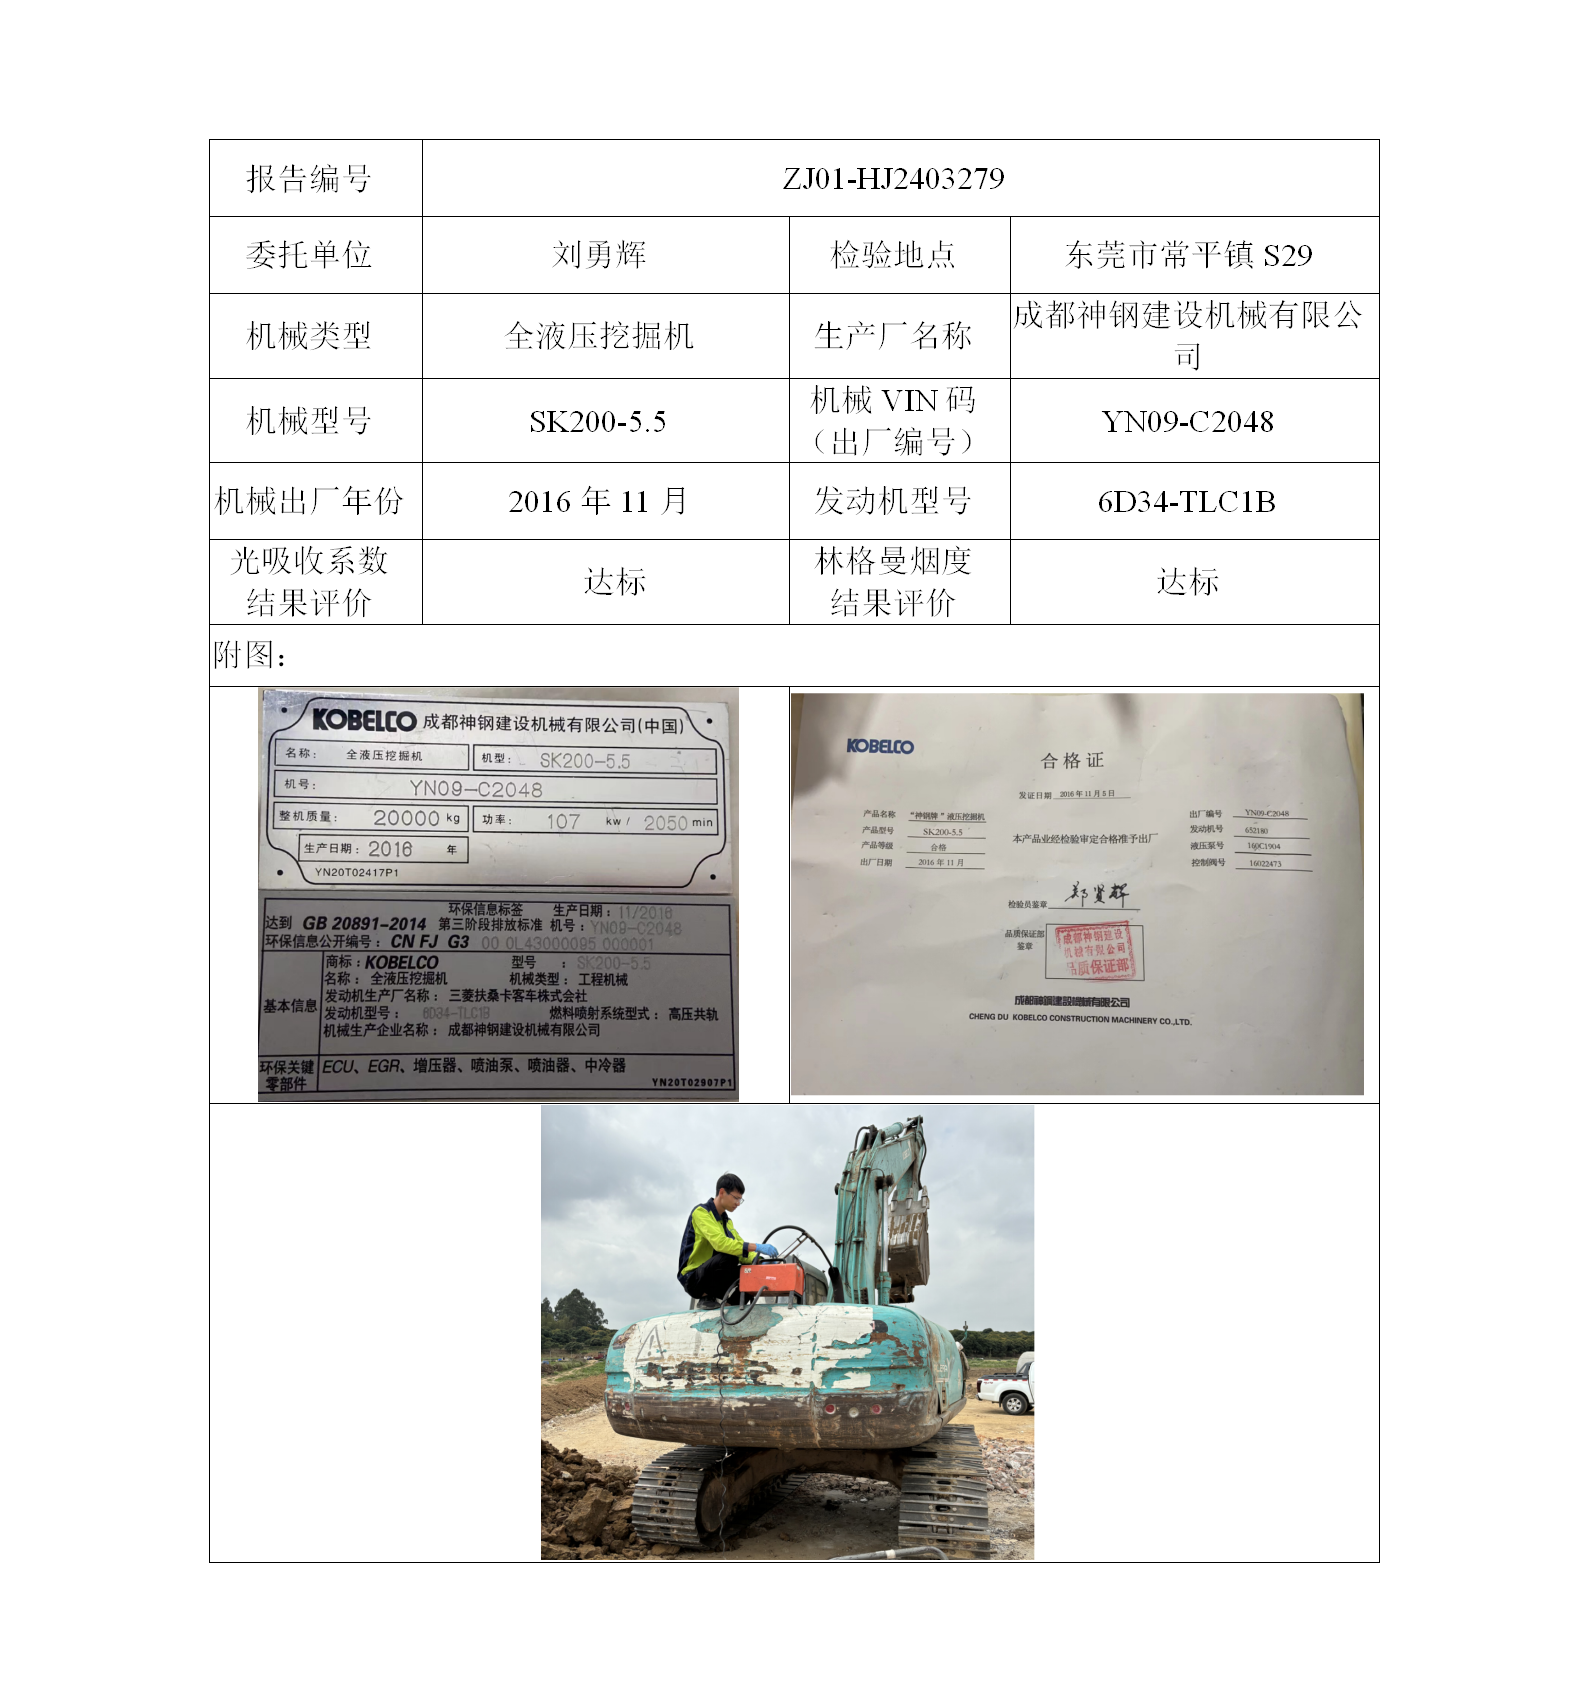 委托-ZJ01-HJ2403279刘勇辉的非道路机械设备（叉车废气）二维码-江静汶_01.png